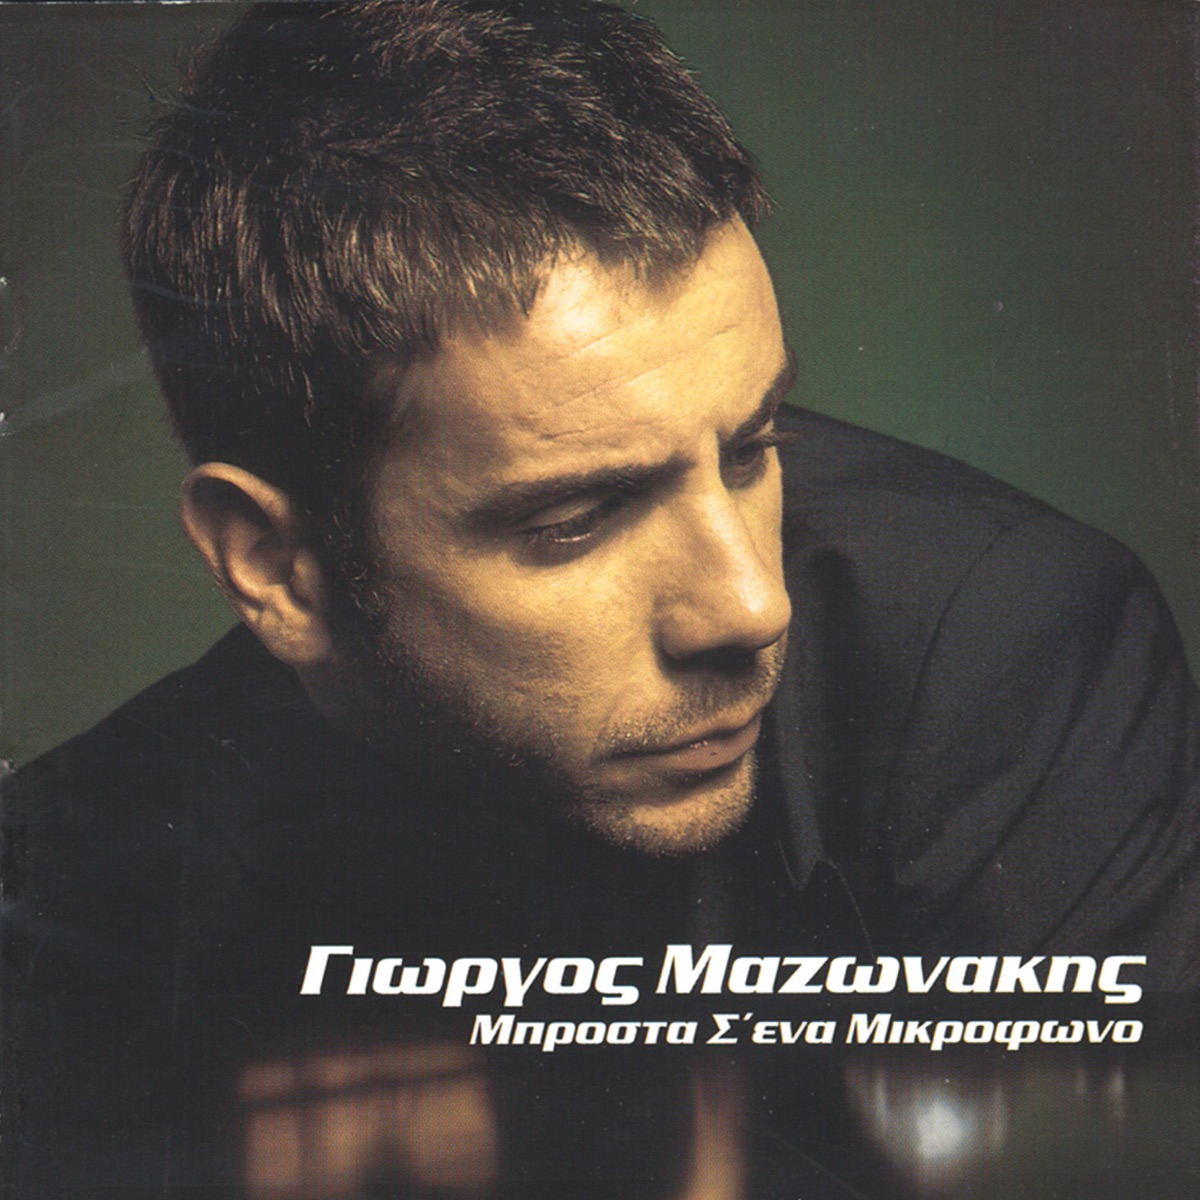 Brosta S' Ena Mikrofono - Album by Giorgos Mazonakis - Apple Music